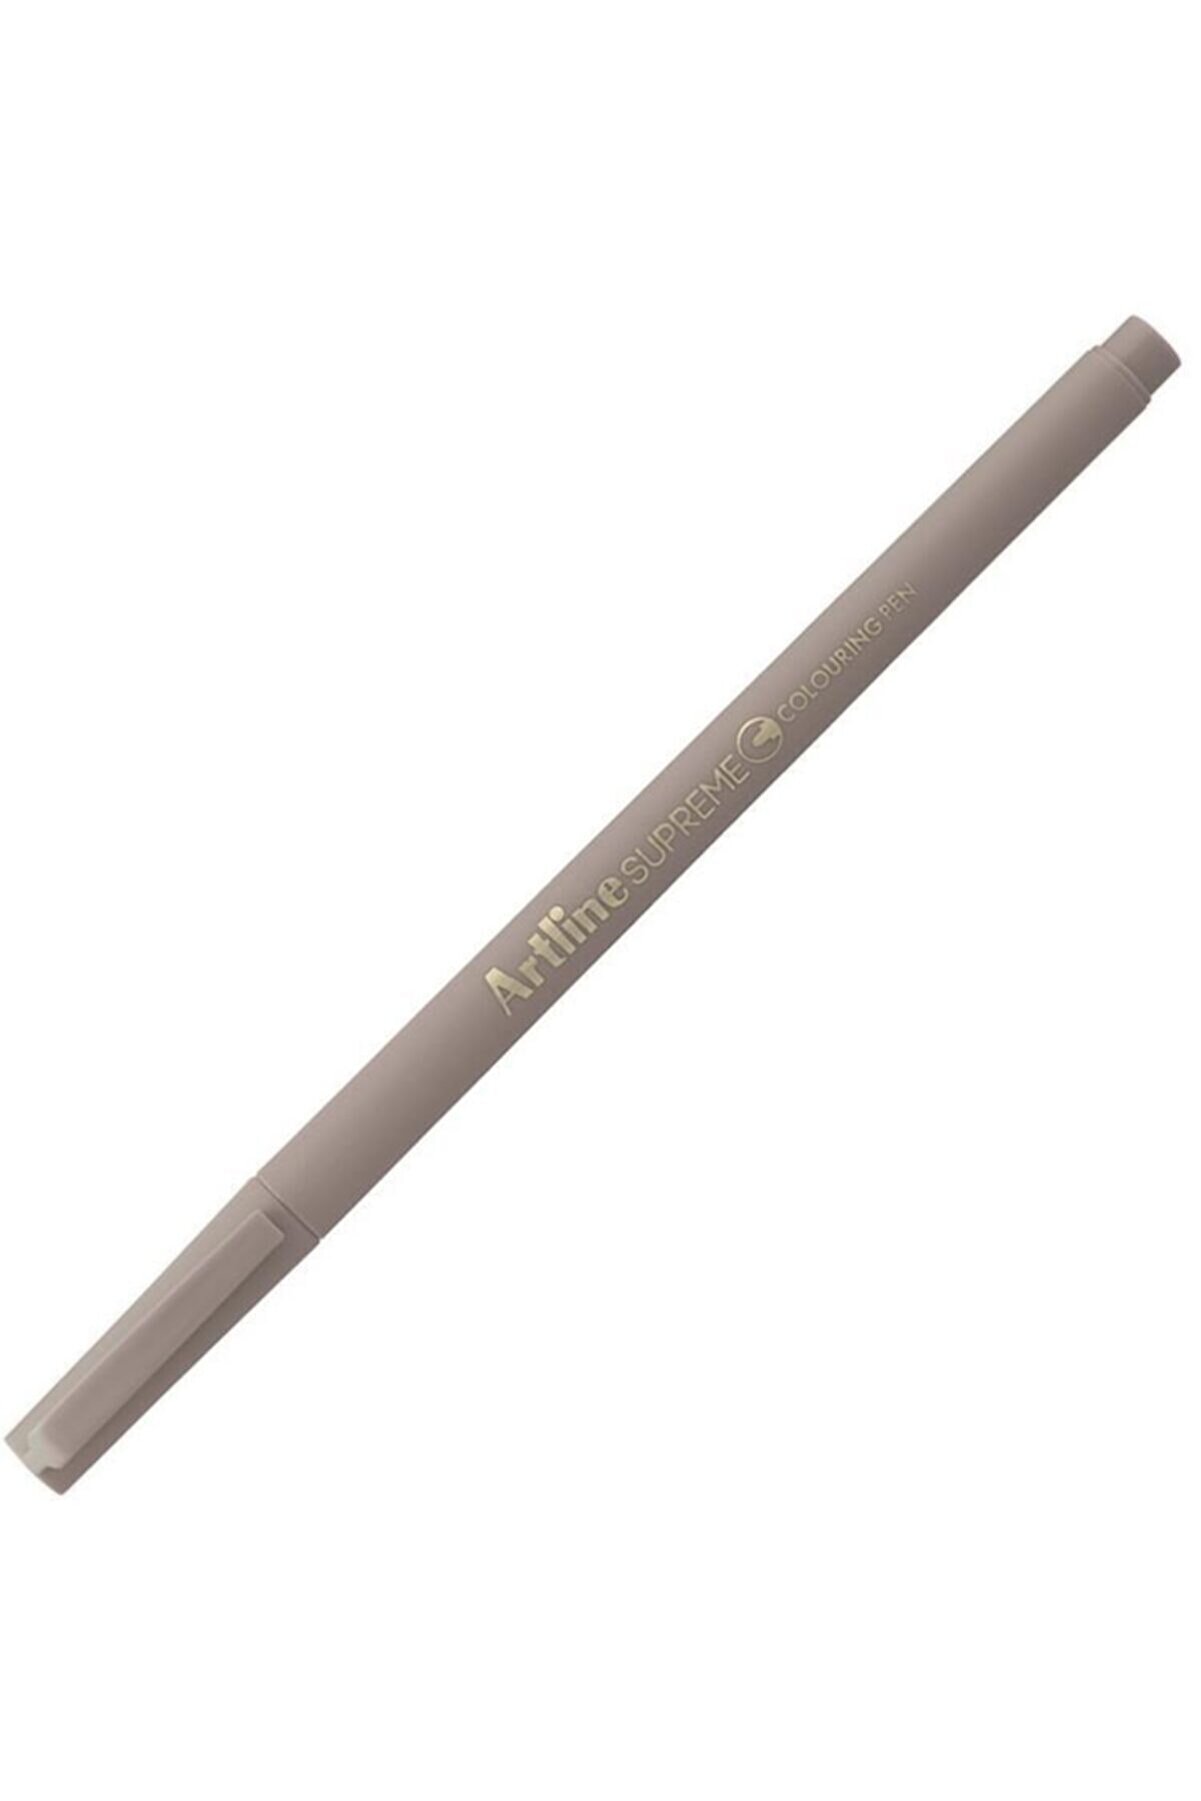 artline Artlıne Supreme Epfs-210 Fıne Pen Pale Brown